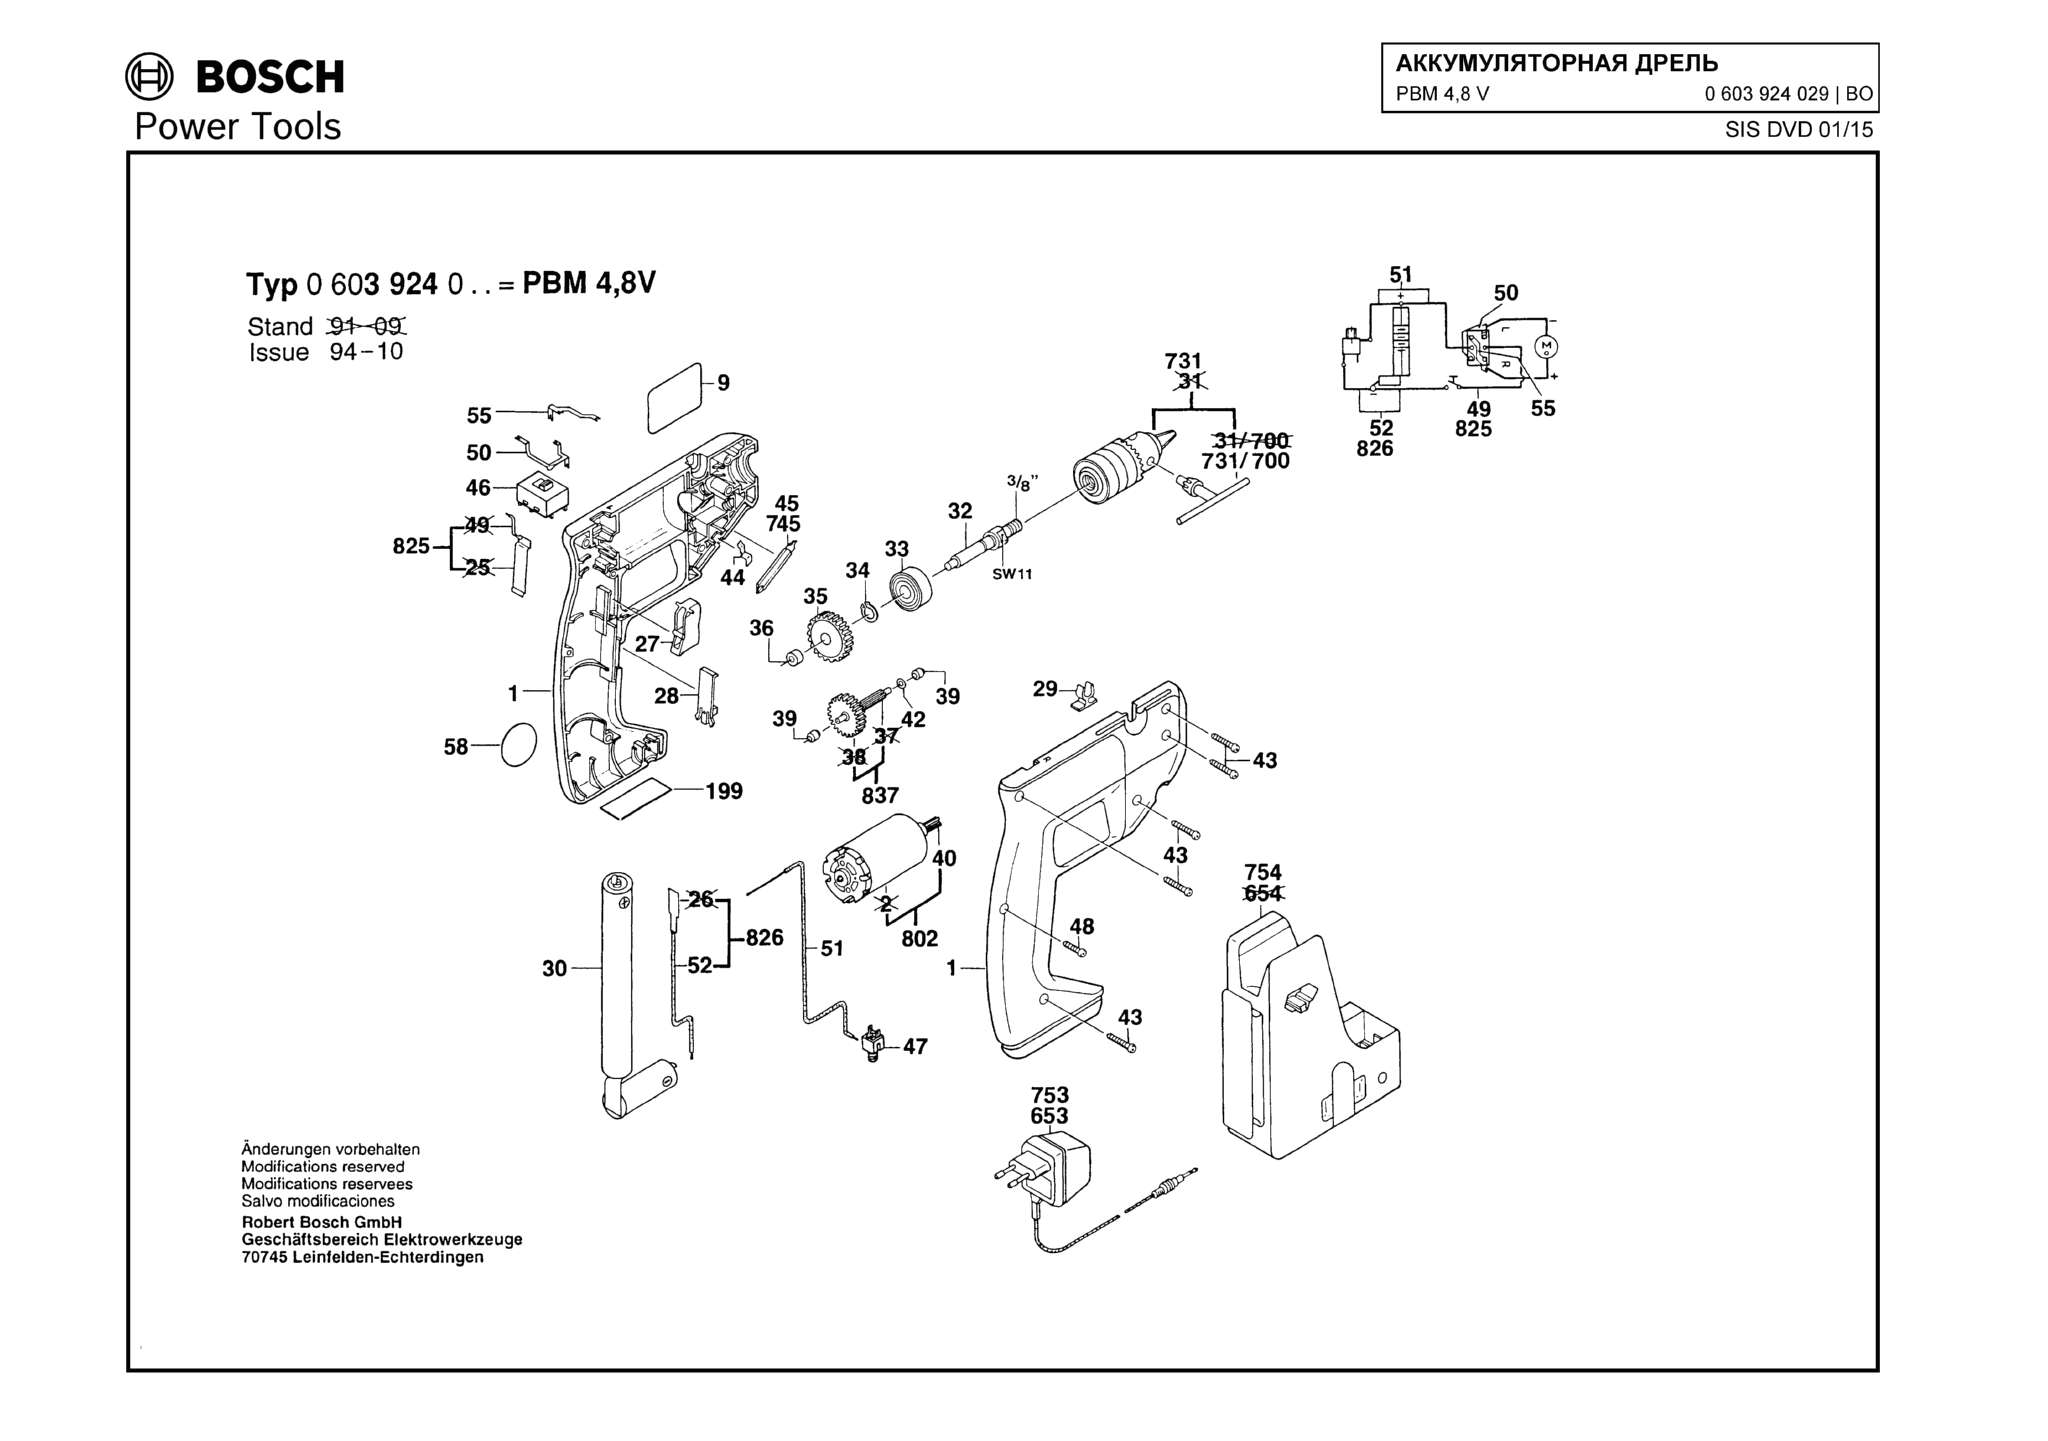 Запчасти, схема и деталировка Bosch PBM 4,8 V (ТИП 0603924029)